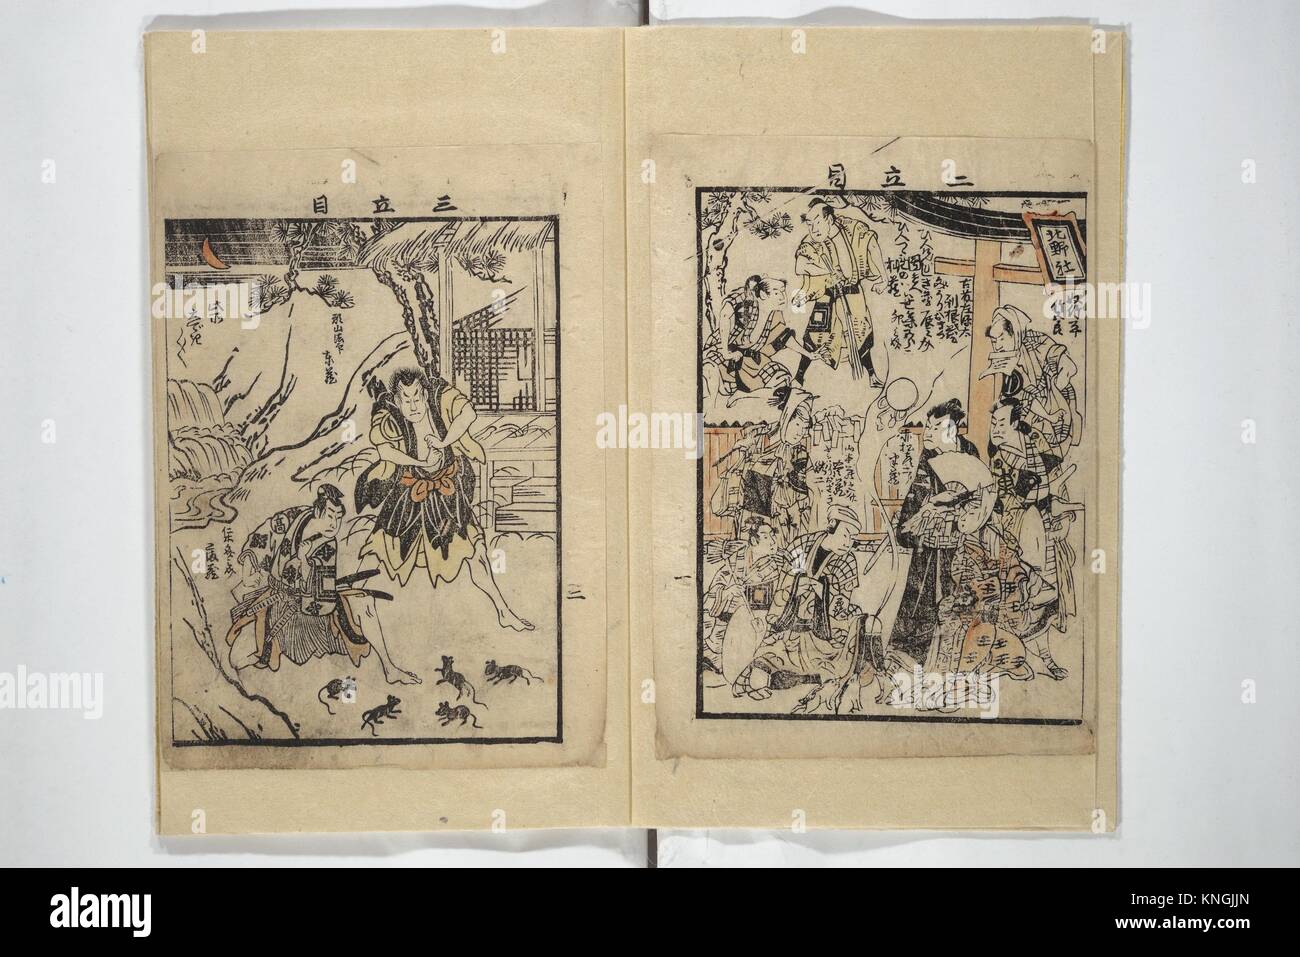 Libro ilustrado con sinopsis de juegos (Ehon banzuke) para espectáculos en el Teatro Nakamura en 1794. Artista: desconocido artista japonés, (Torii Foto de stock